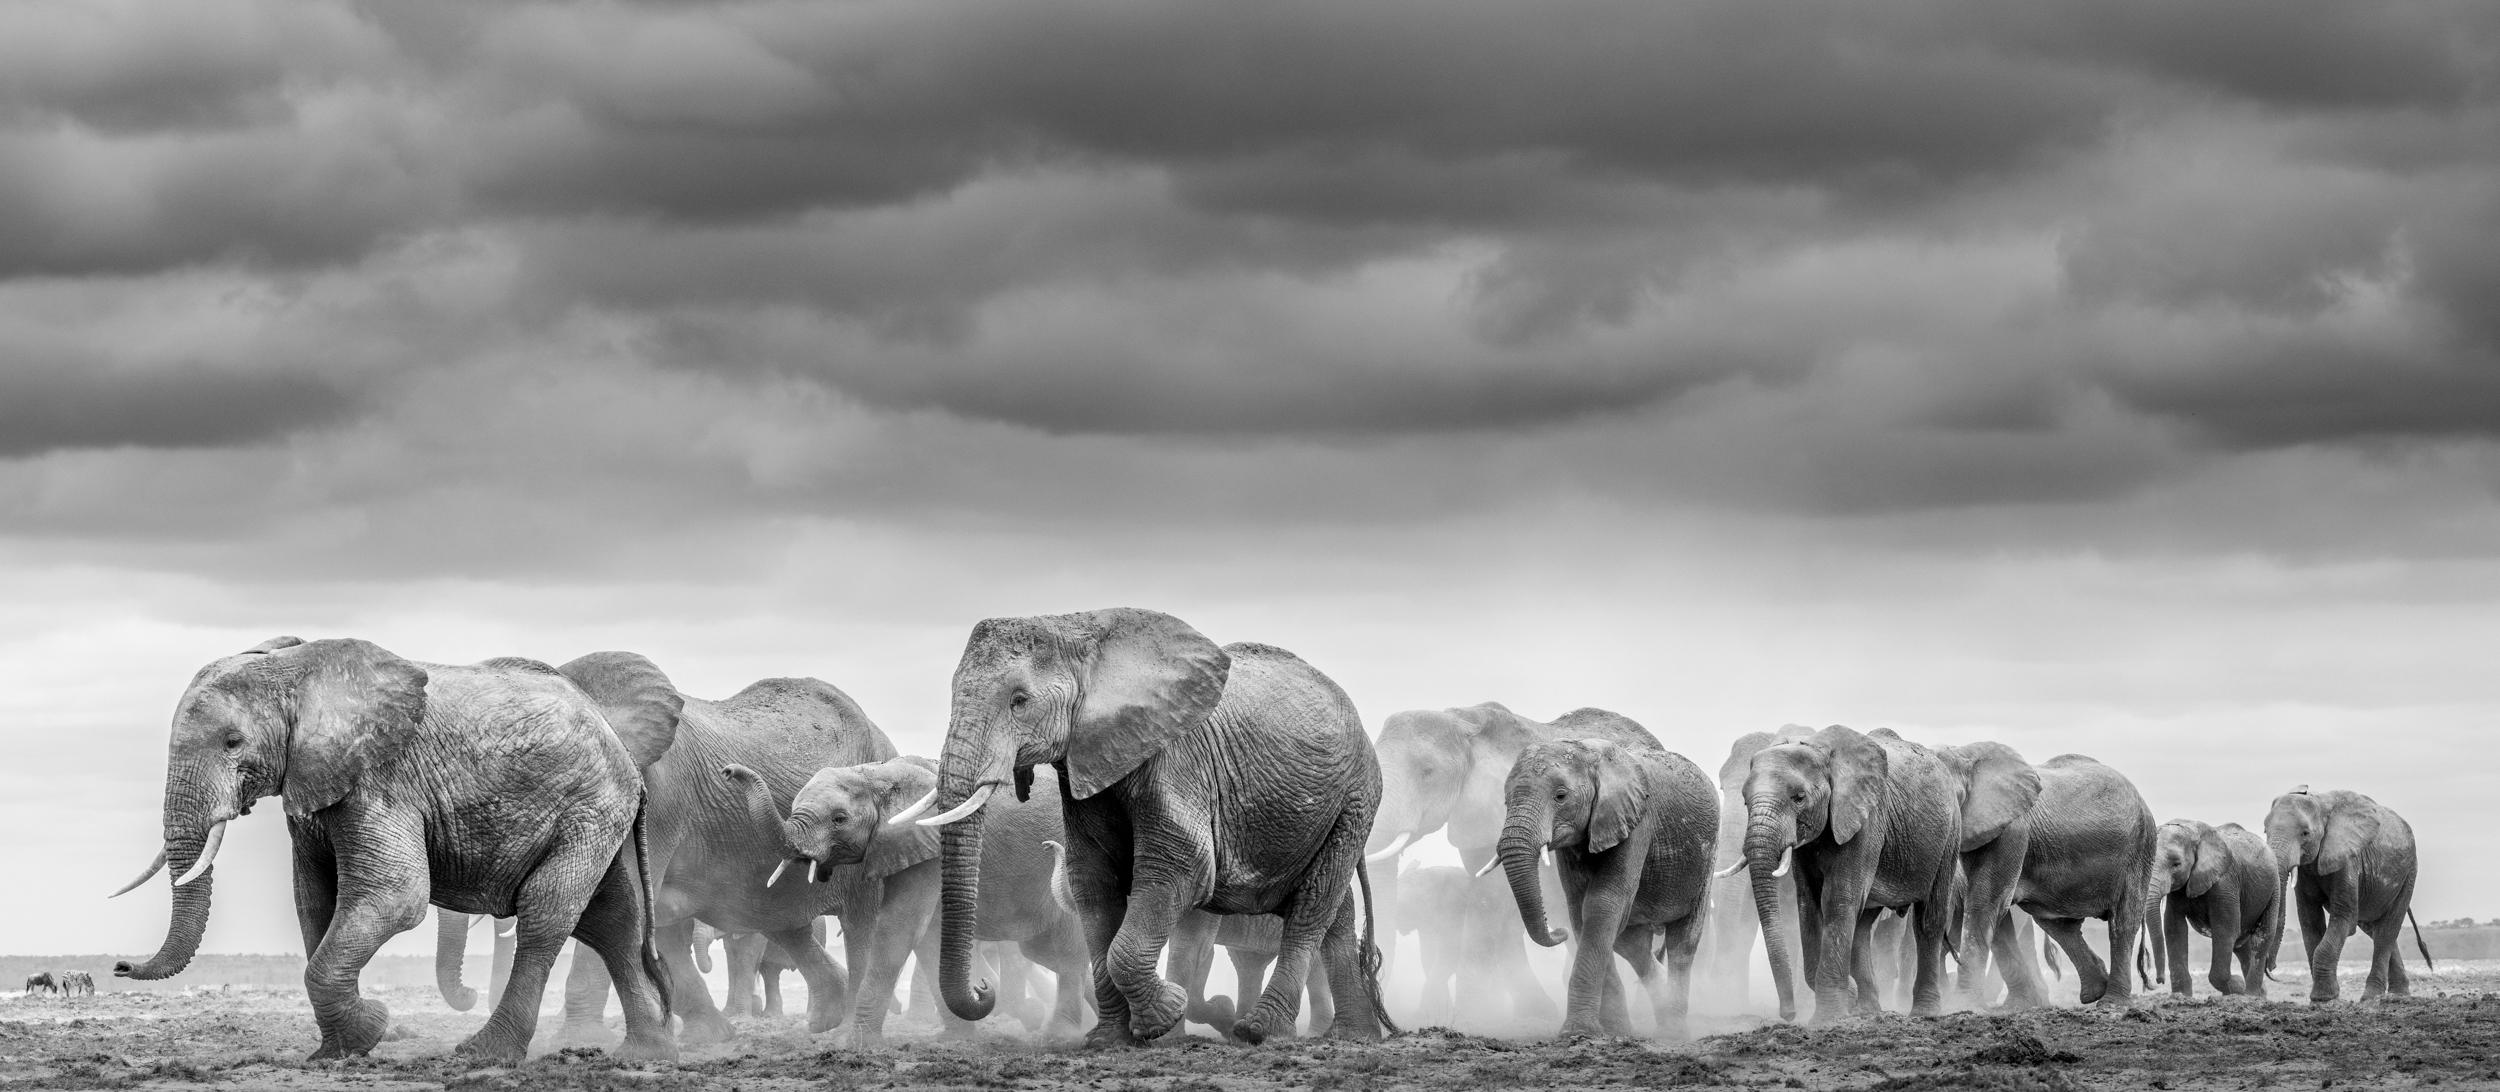 "Amboseli ist einer meiner Lieblingsorte, um Elefanten zu fotografieren. Die weitgehend karge Landschaft eignet sich hervorragend für meinen Fotostil, denn sie ist wie eine leere Leinwand, auf der man malen kann. In diesen weiten, leeren Räumen ist